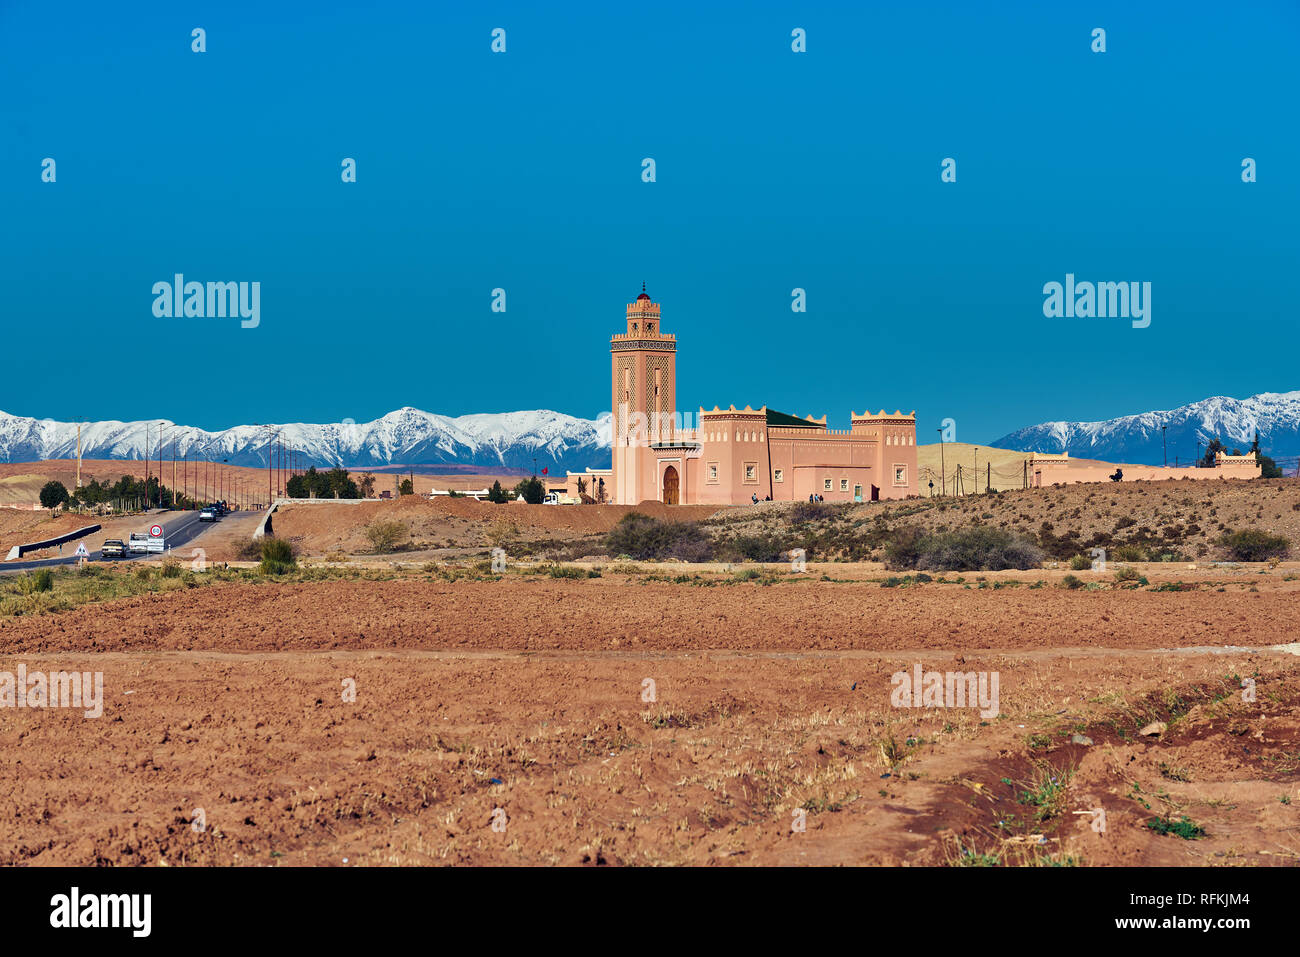 Paysage d'une mosquée marocaine traditionnelle sur l'autoroute et montagnes enneigées de l'Atlas. Prise à Timedline, province d'Ouarzazate, Maroc Banque D'Images